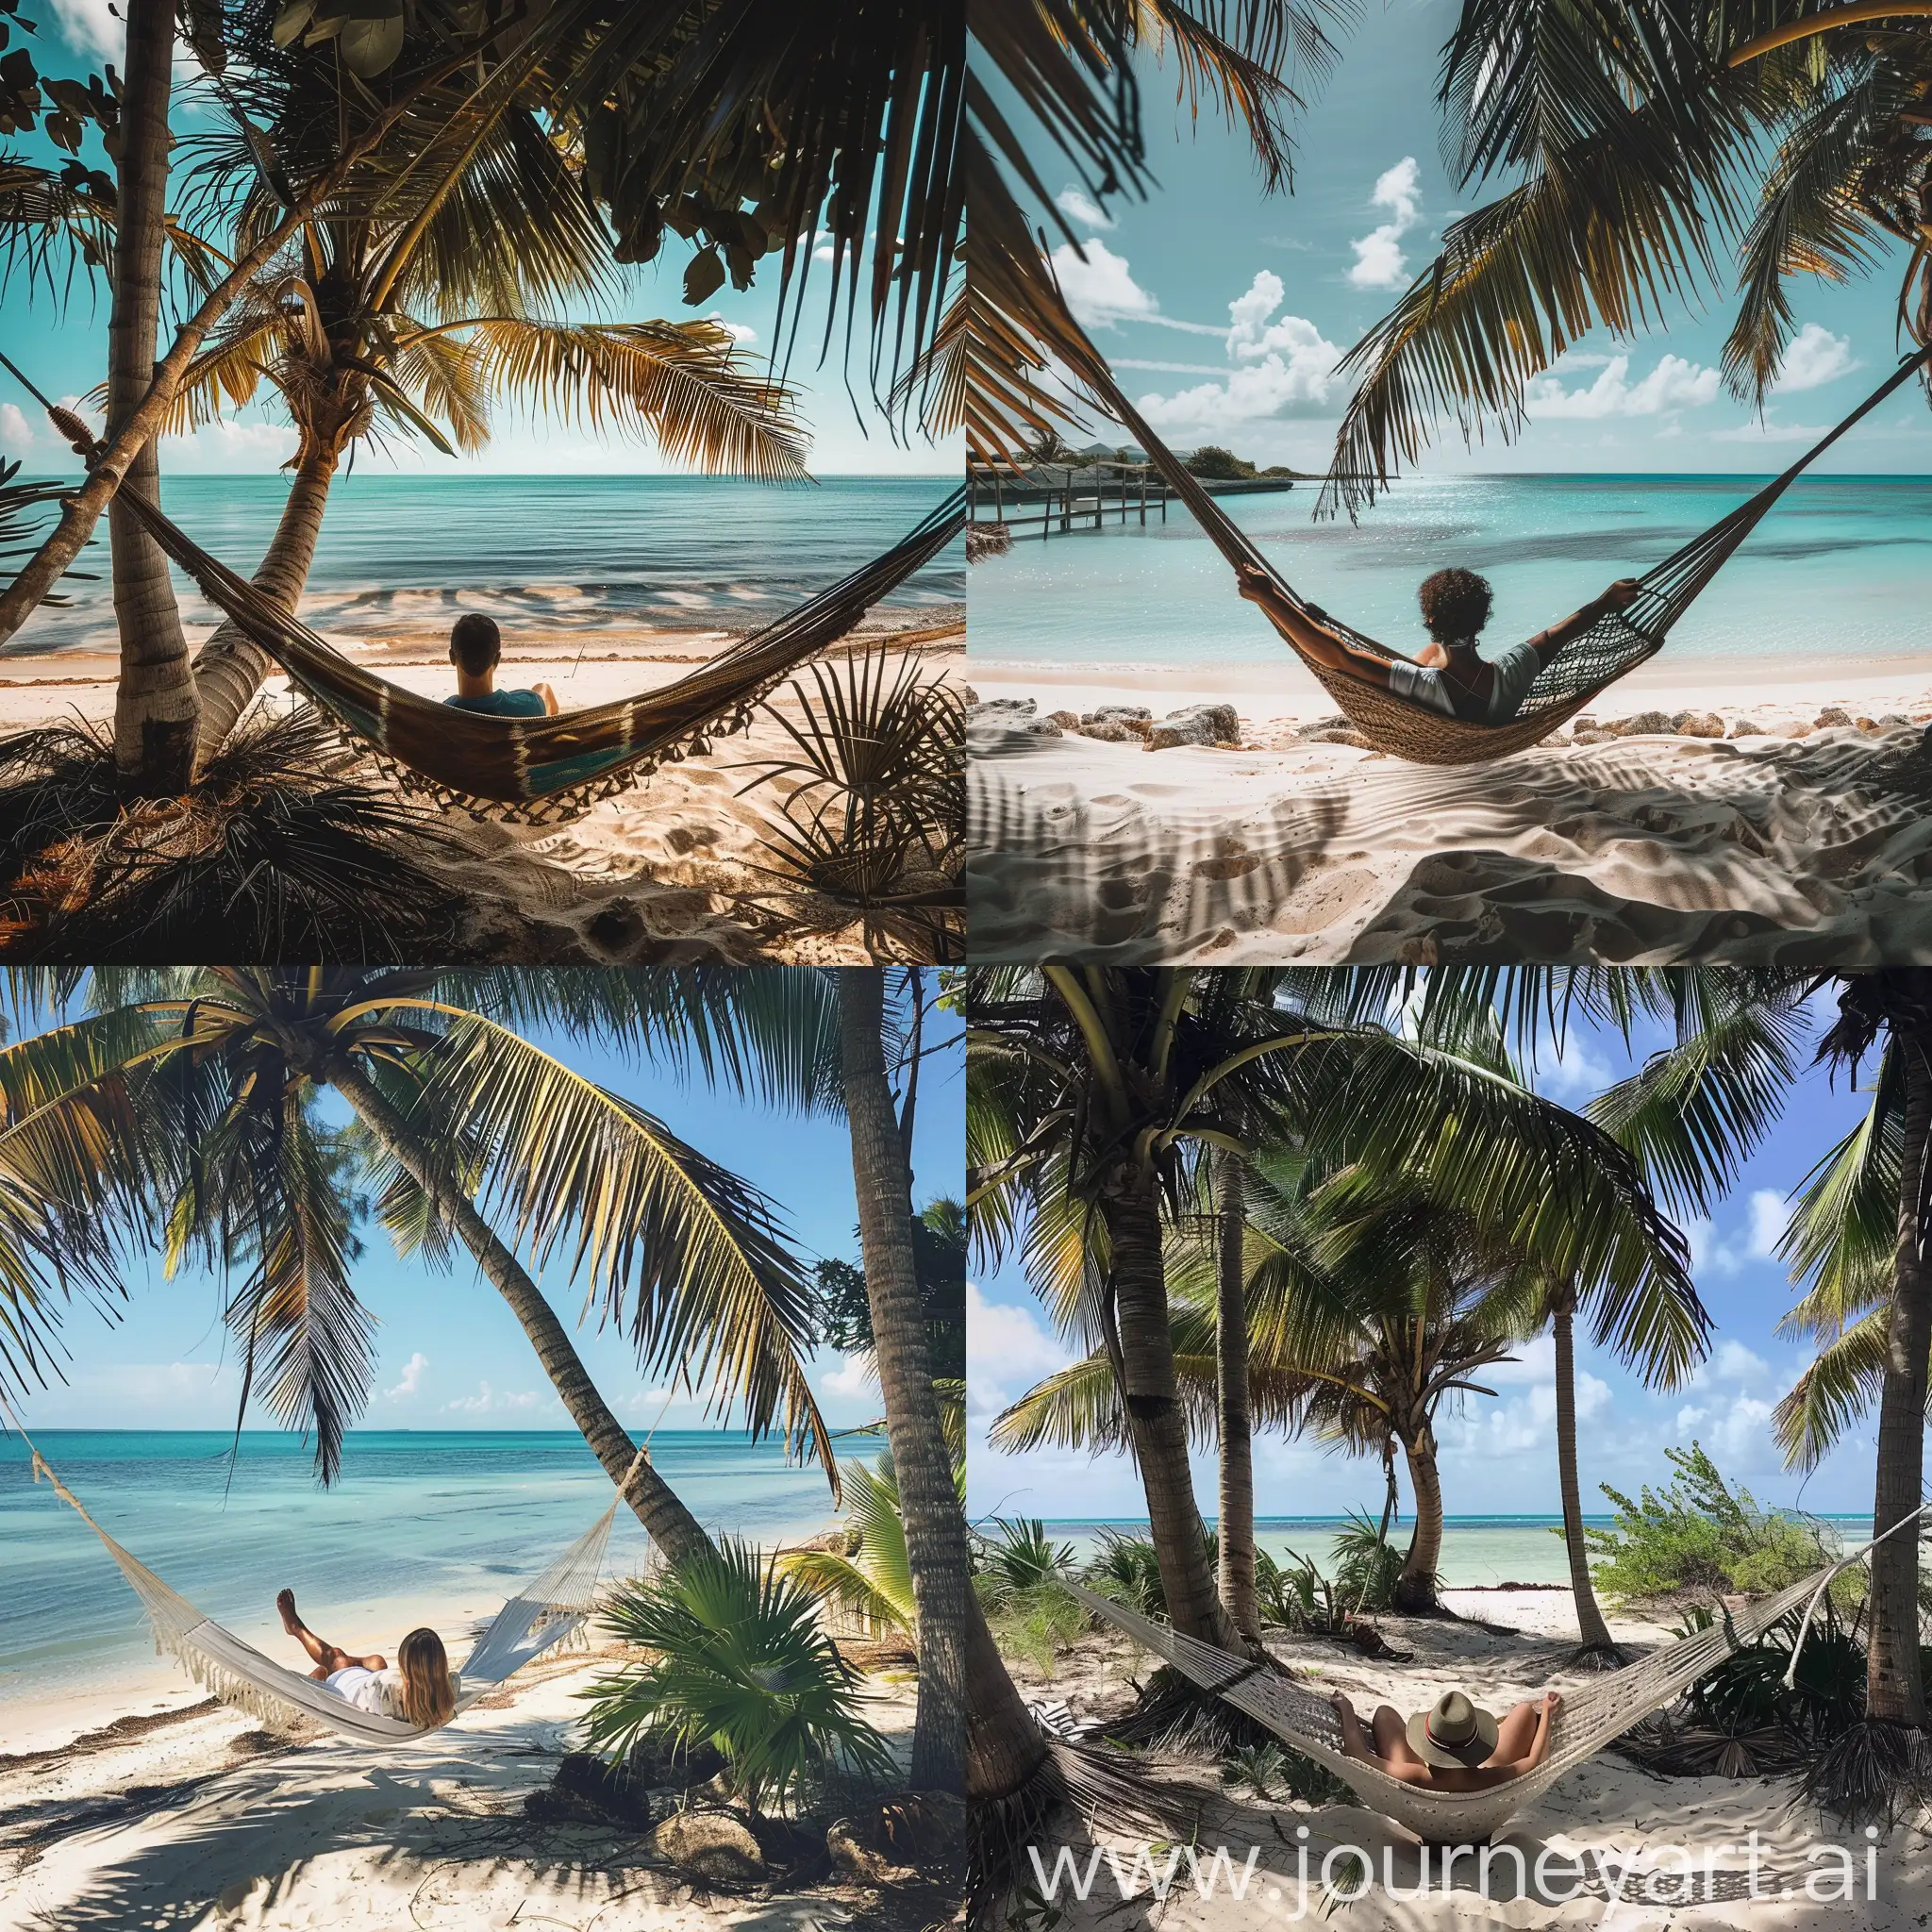 человек програмирует игру, лежа на гамаке на багамах